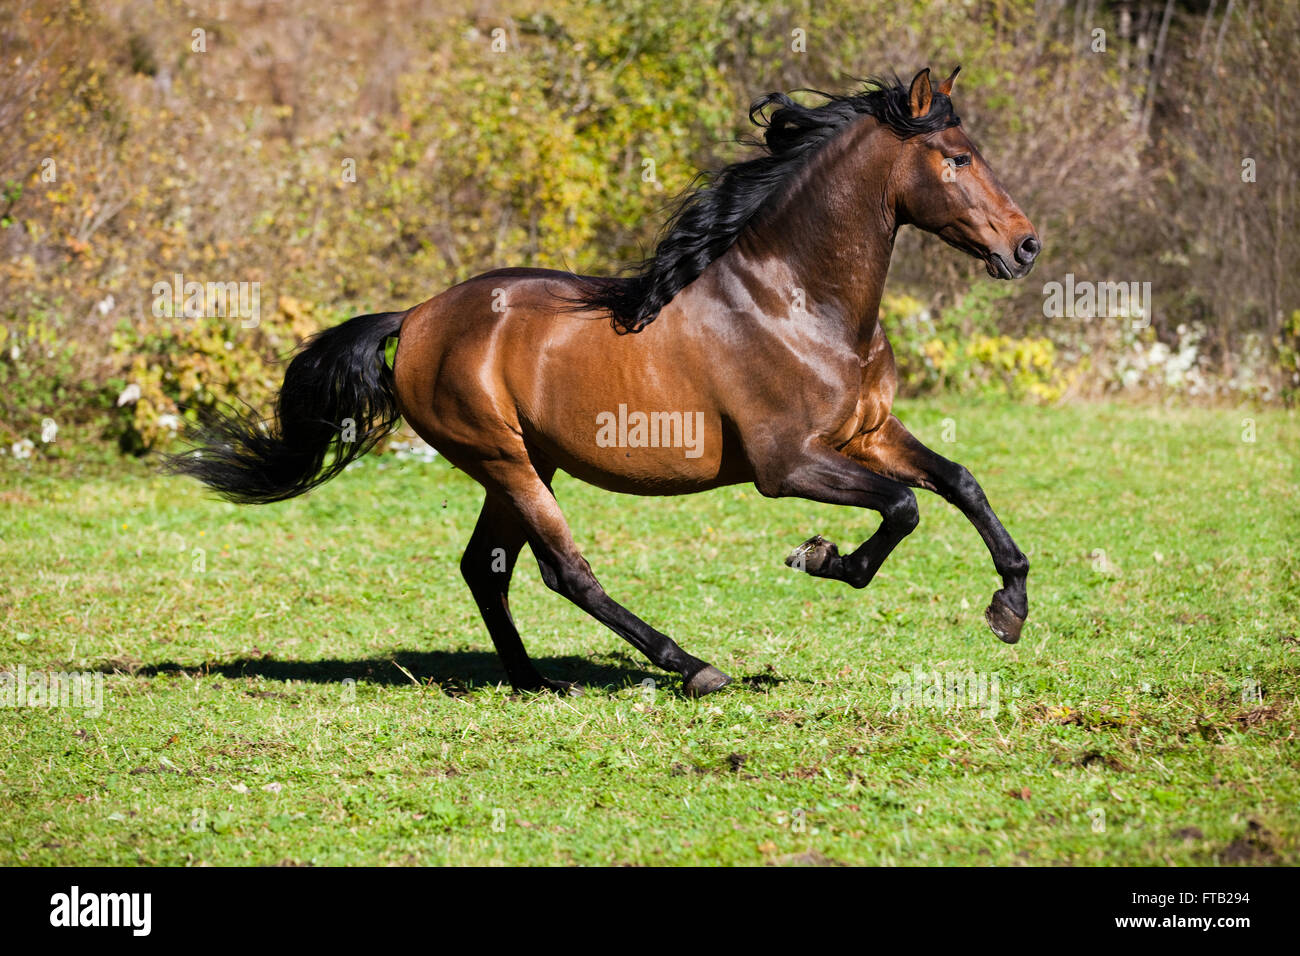 Brown PRE horse galloping across a meadow, Austria Stock Photo